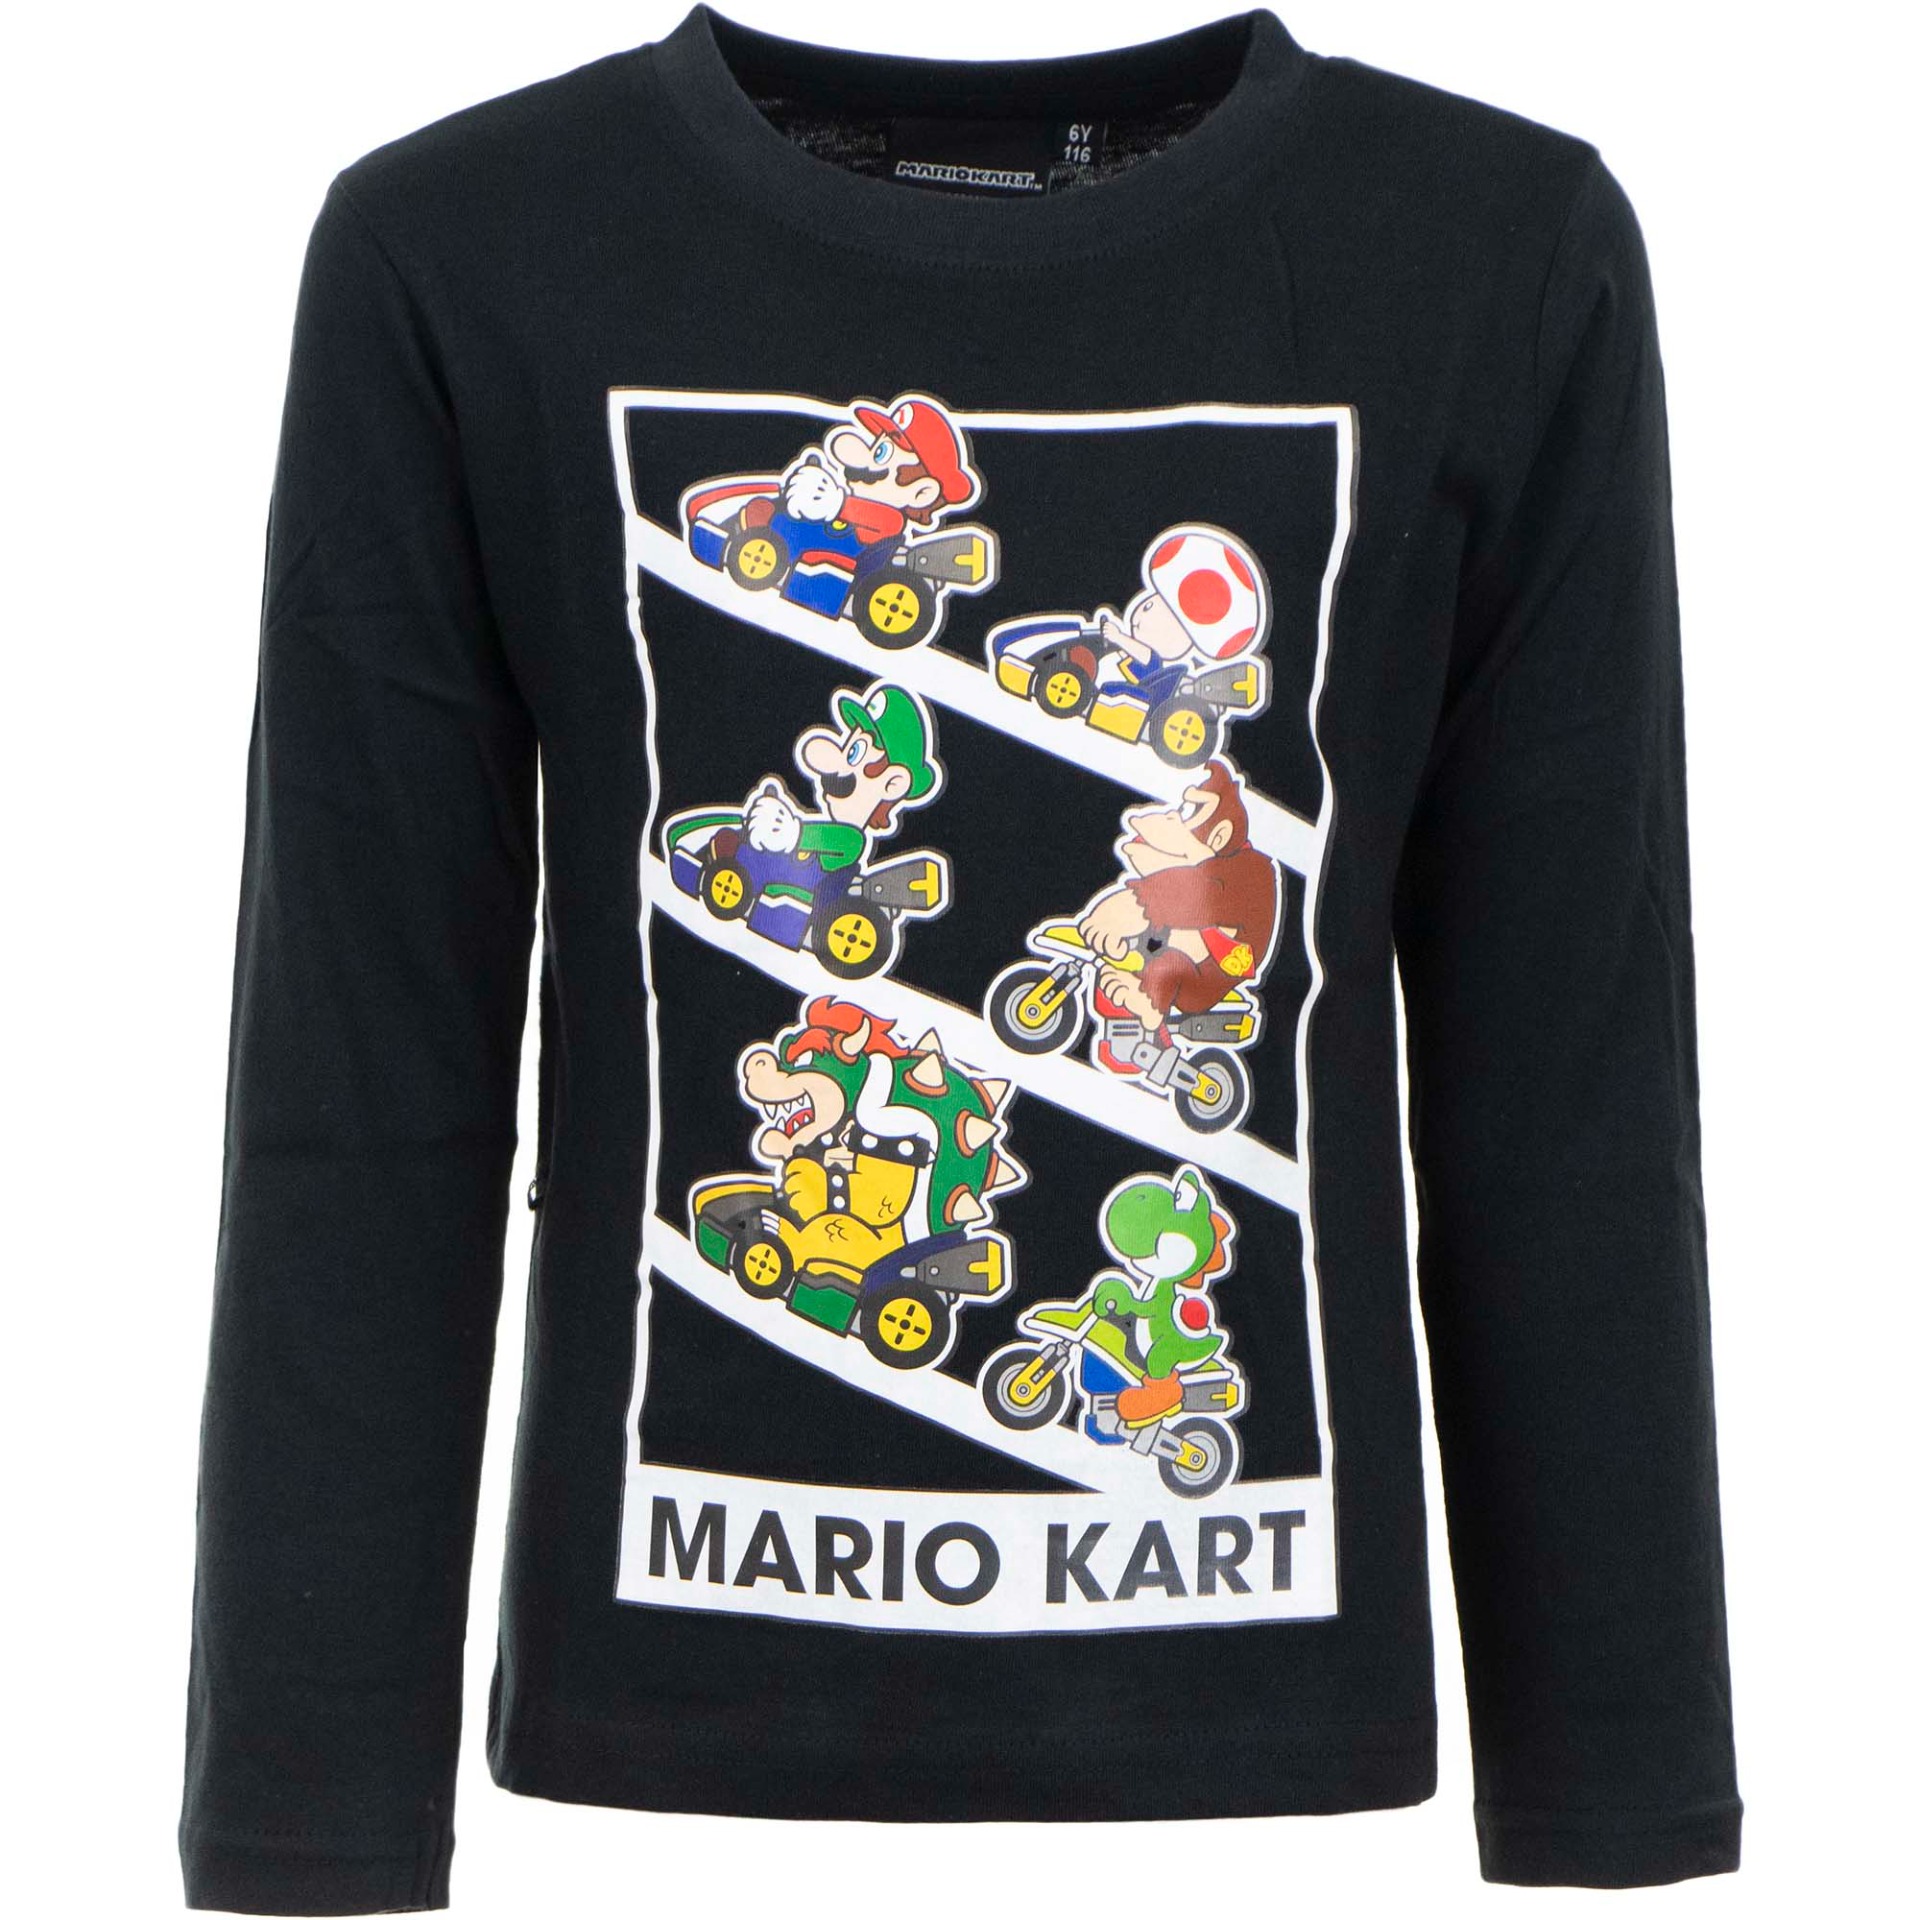 Super Mario Långärmad tröja - Mario Kart!